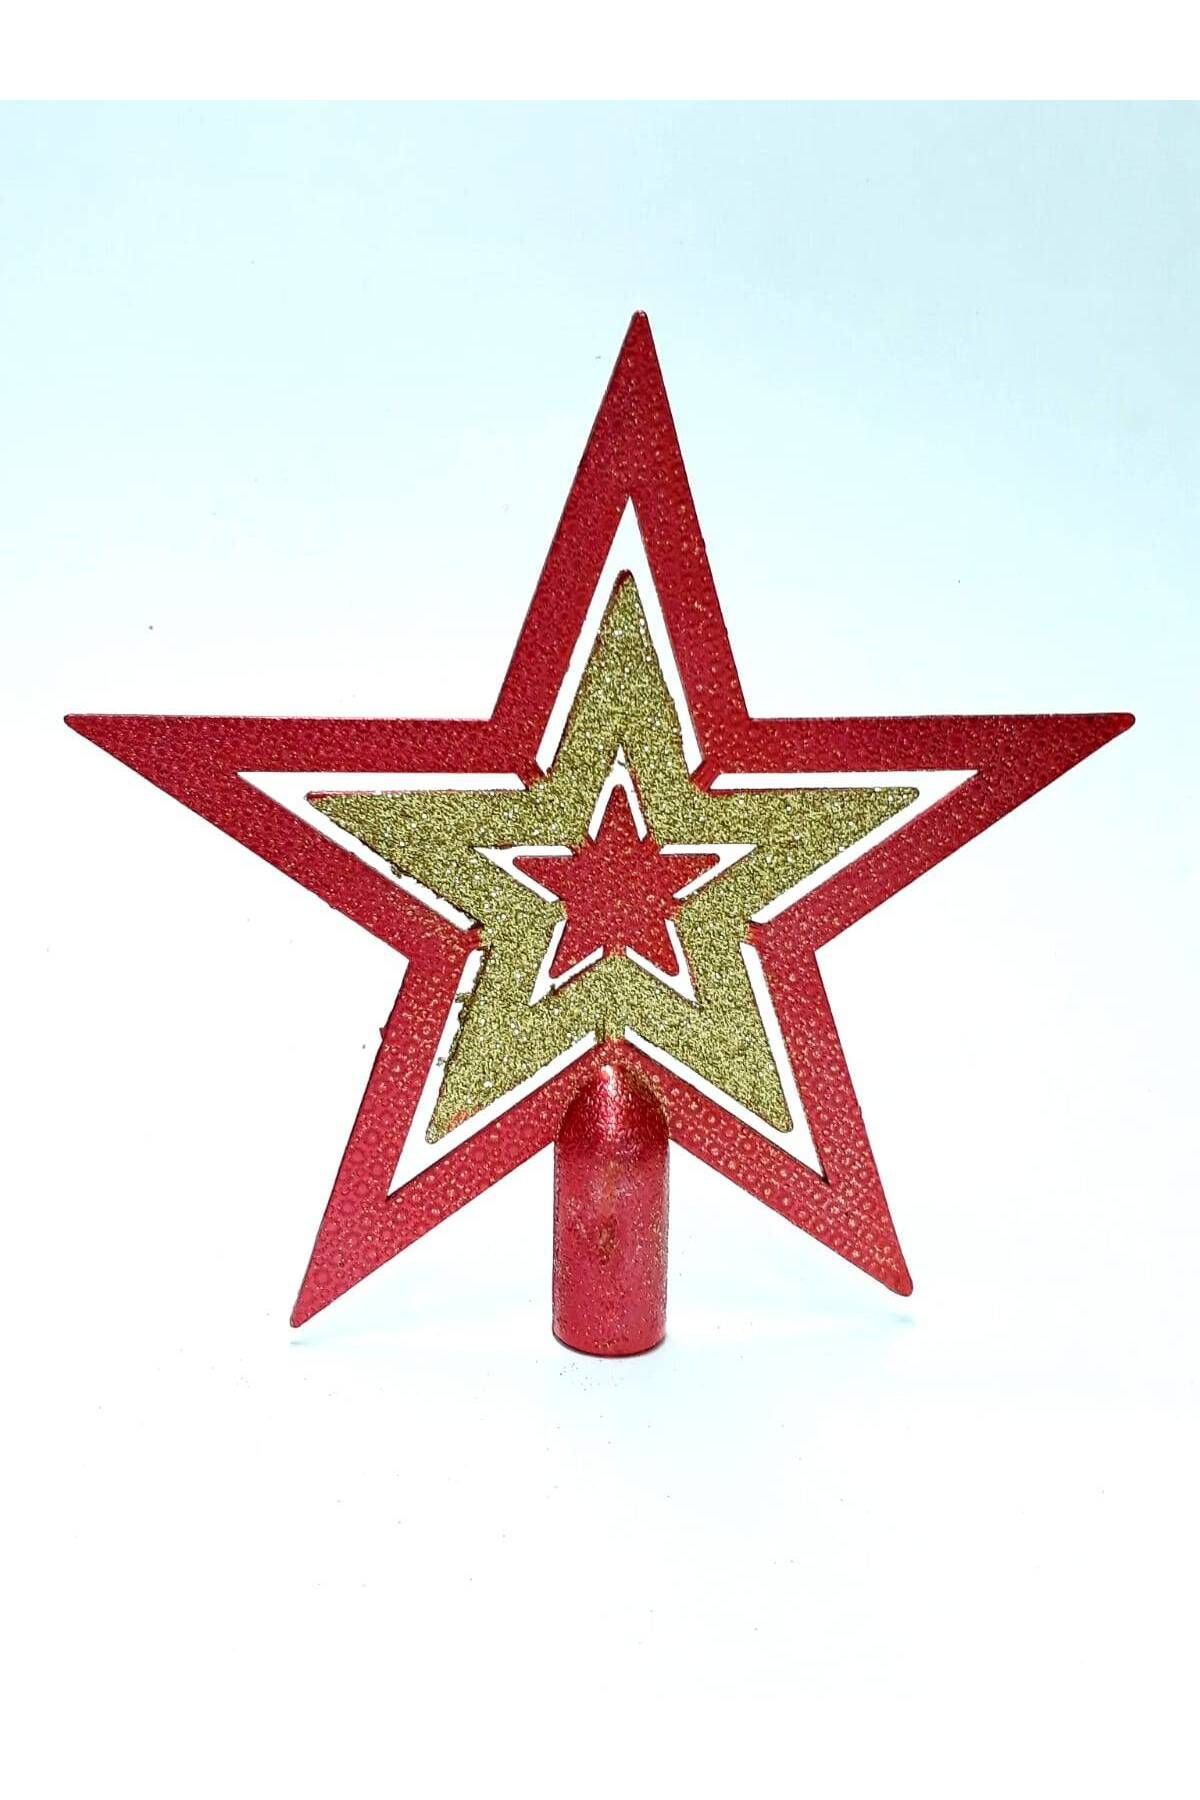 tüfekçioğlu KS Kırmızı Gold Renk Simli Yıldız Yılbaşı Ağacı Tepelik